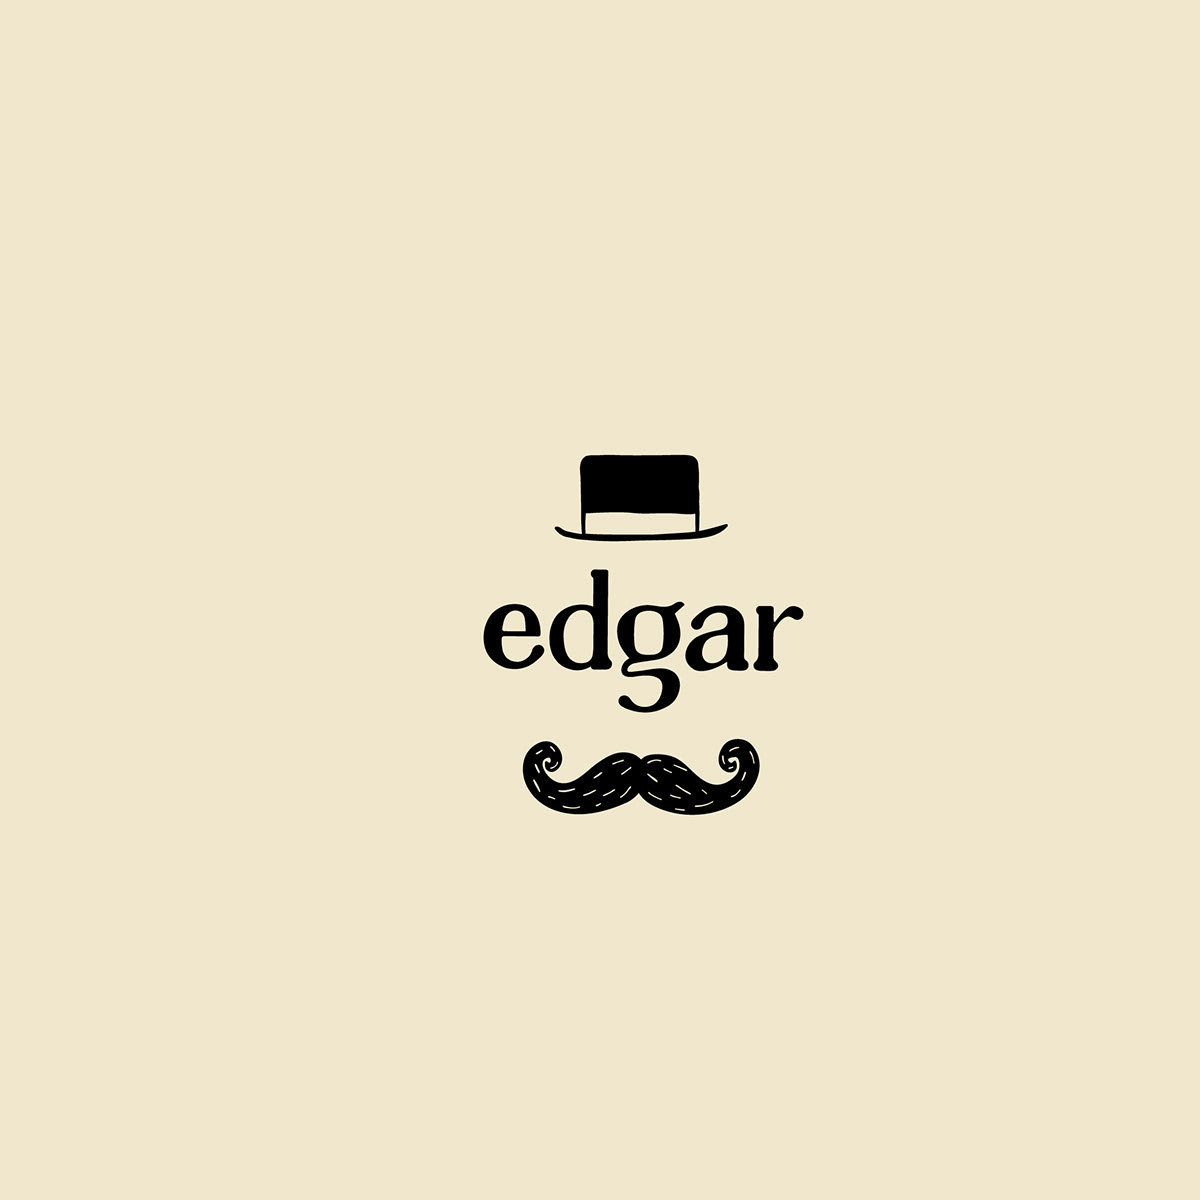 Edgar storytelling   Character design logo identity Stories The Storyteller